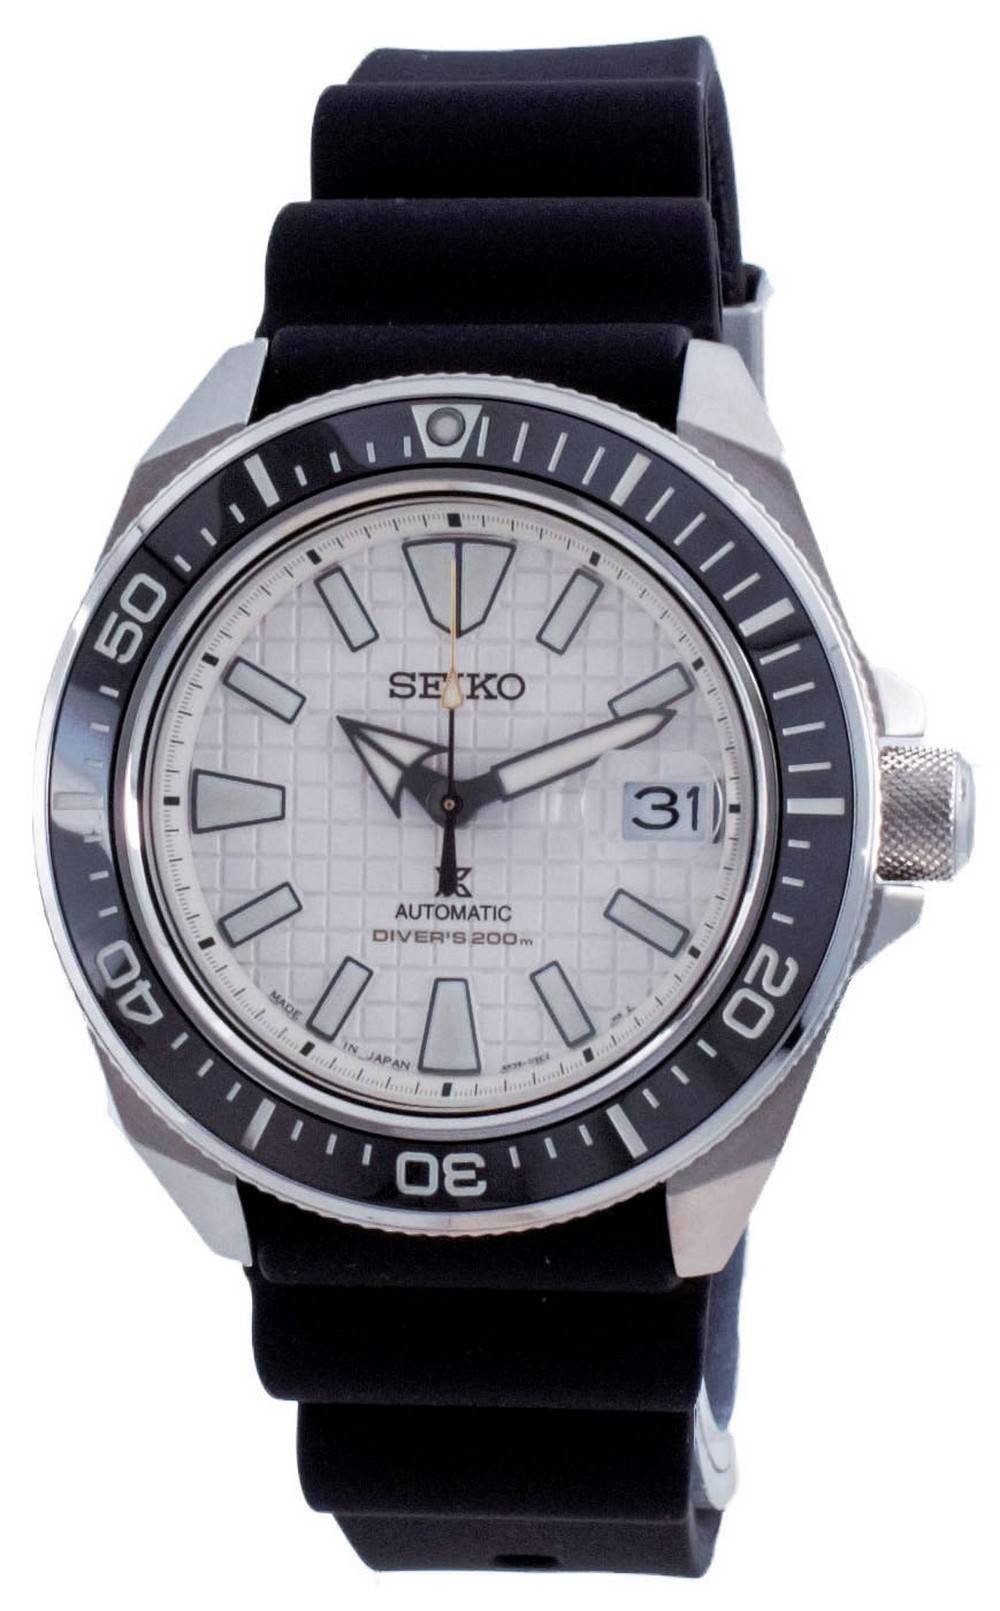 Đồng hồ nam Seiko Prospex King Samurai Automatic Diver's SRPE37 SRPE37J1  SRPE37J 200M vi